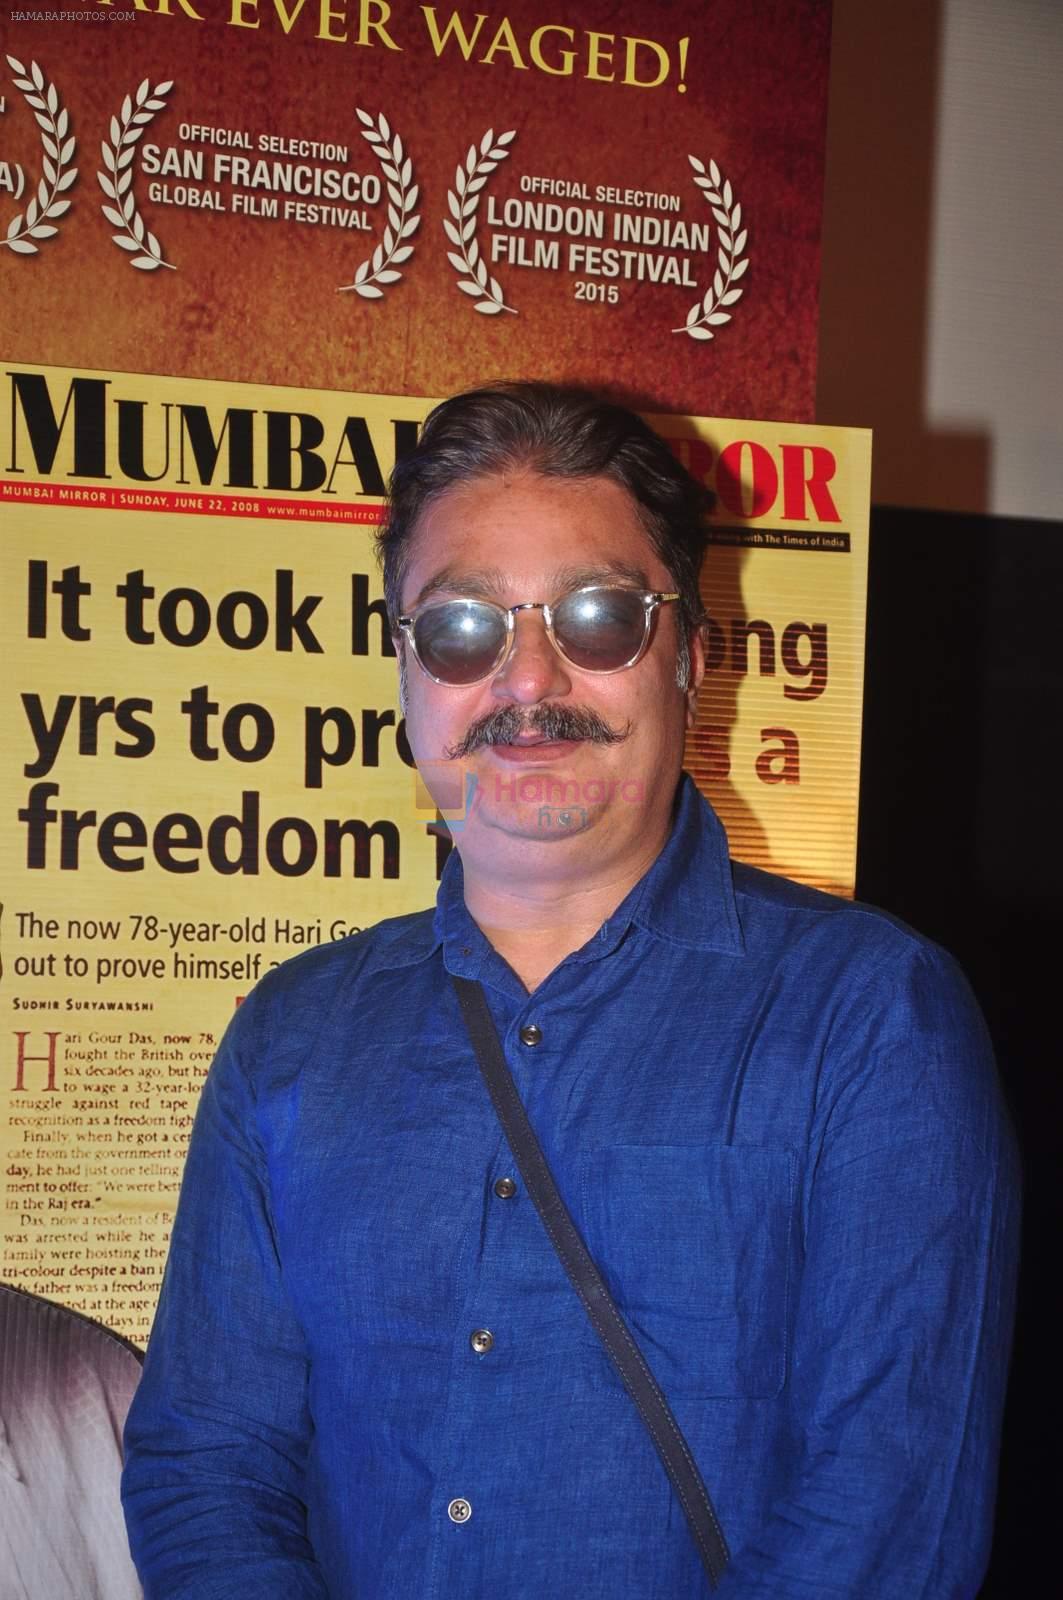 Vinay Pathak at Gour Hari Daastan film launch in Cinemax, Mumbai on 25th May 2015